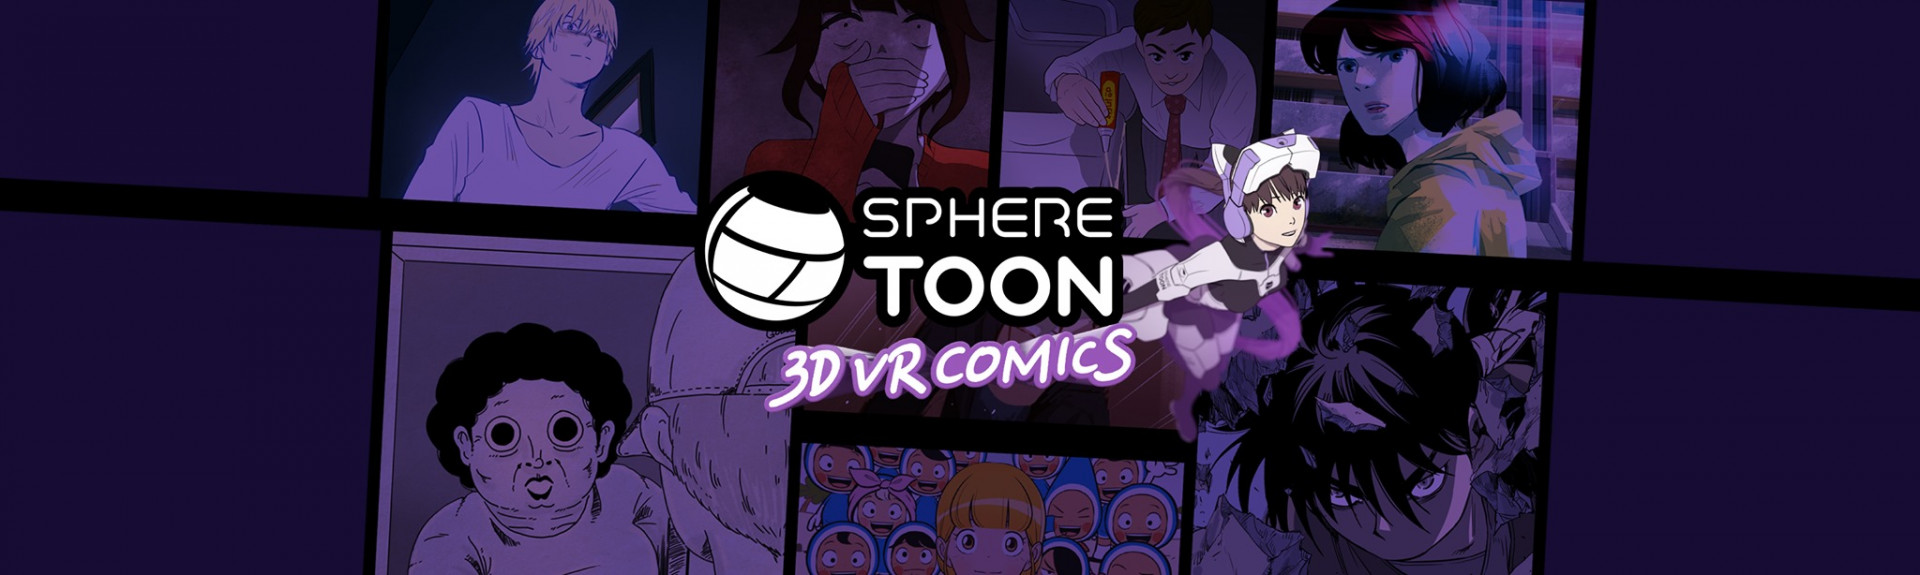 Sphere Toon - VR Comic